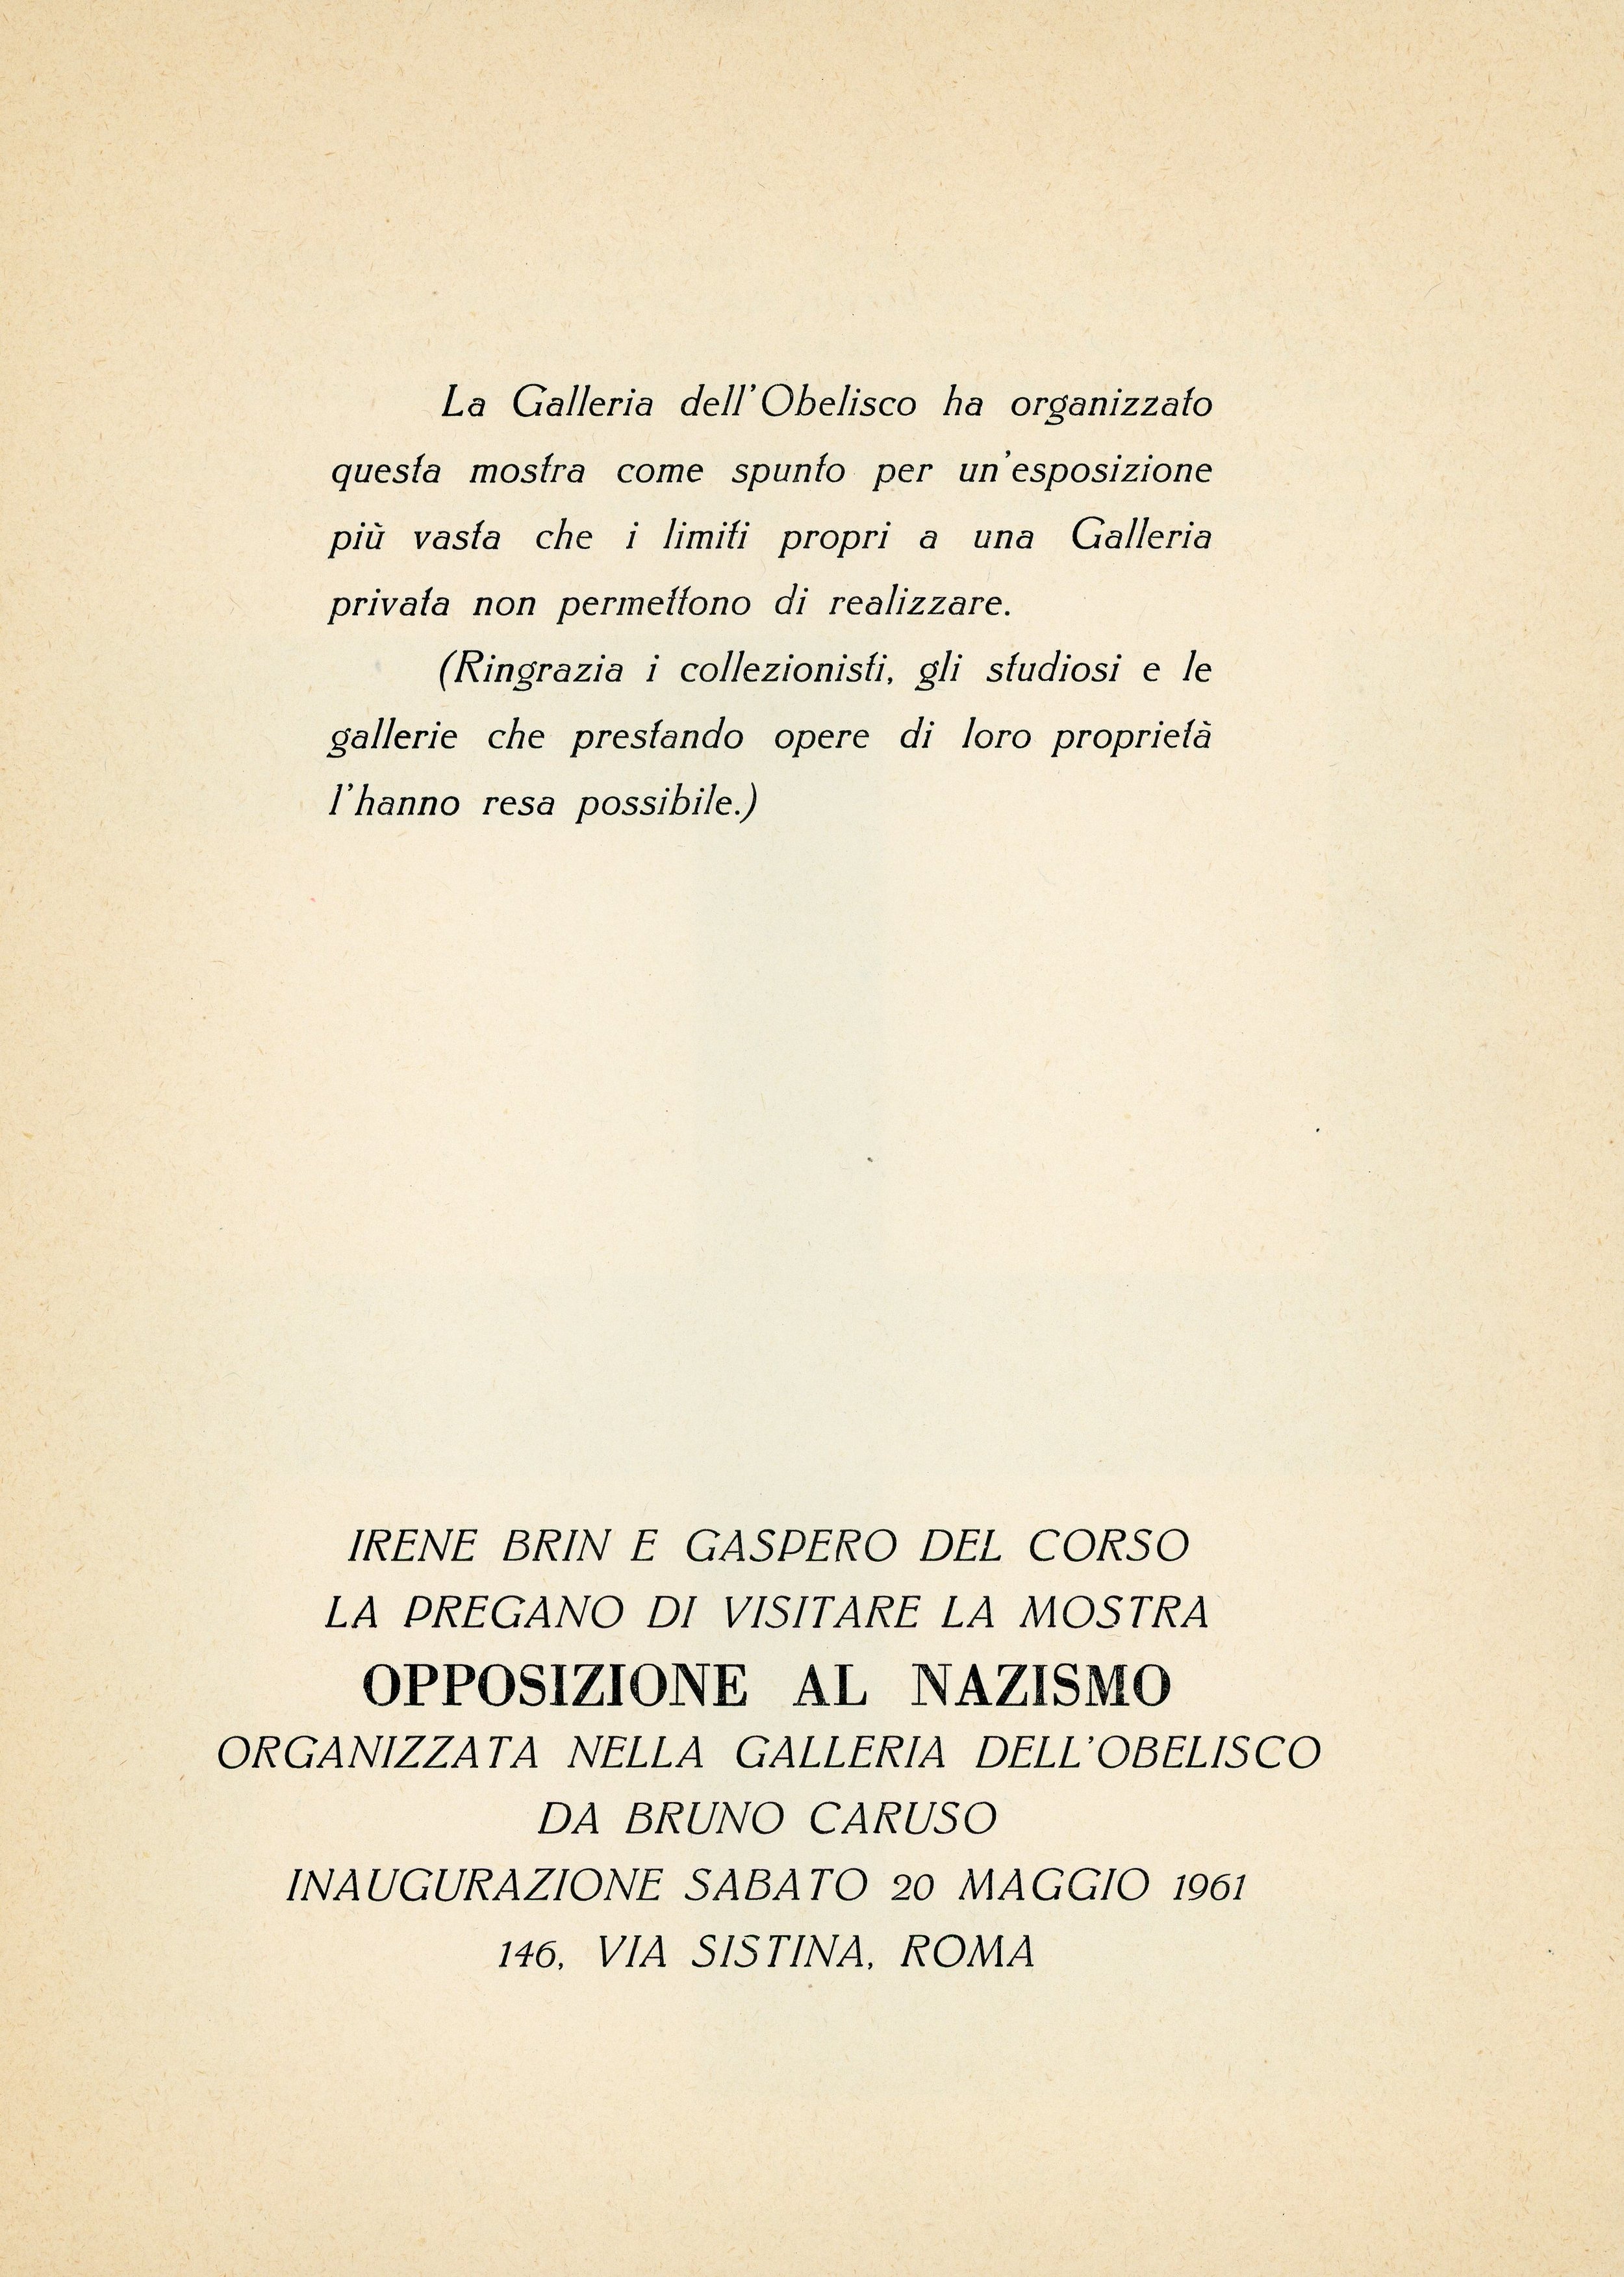 1961-05 Opposizione al Nazismo Obelisco - Bruno Caruso_09.jpg